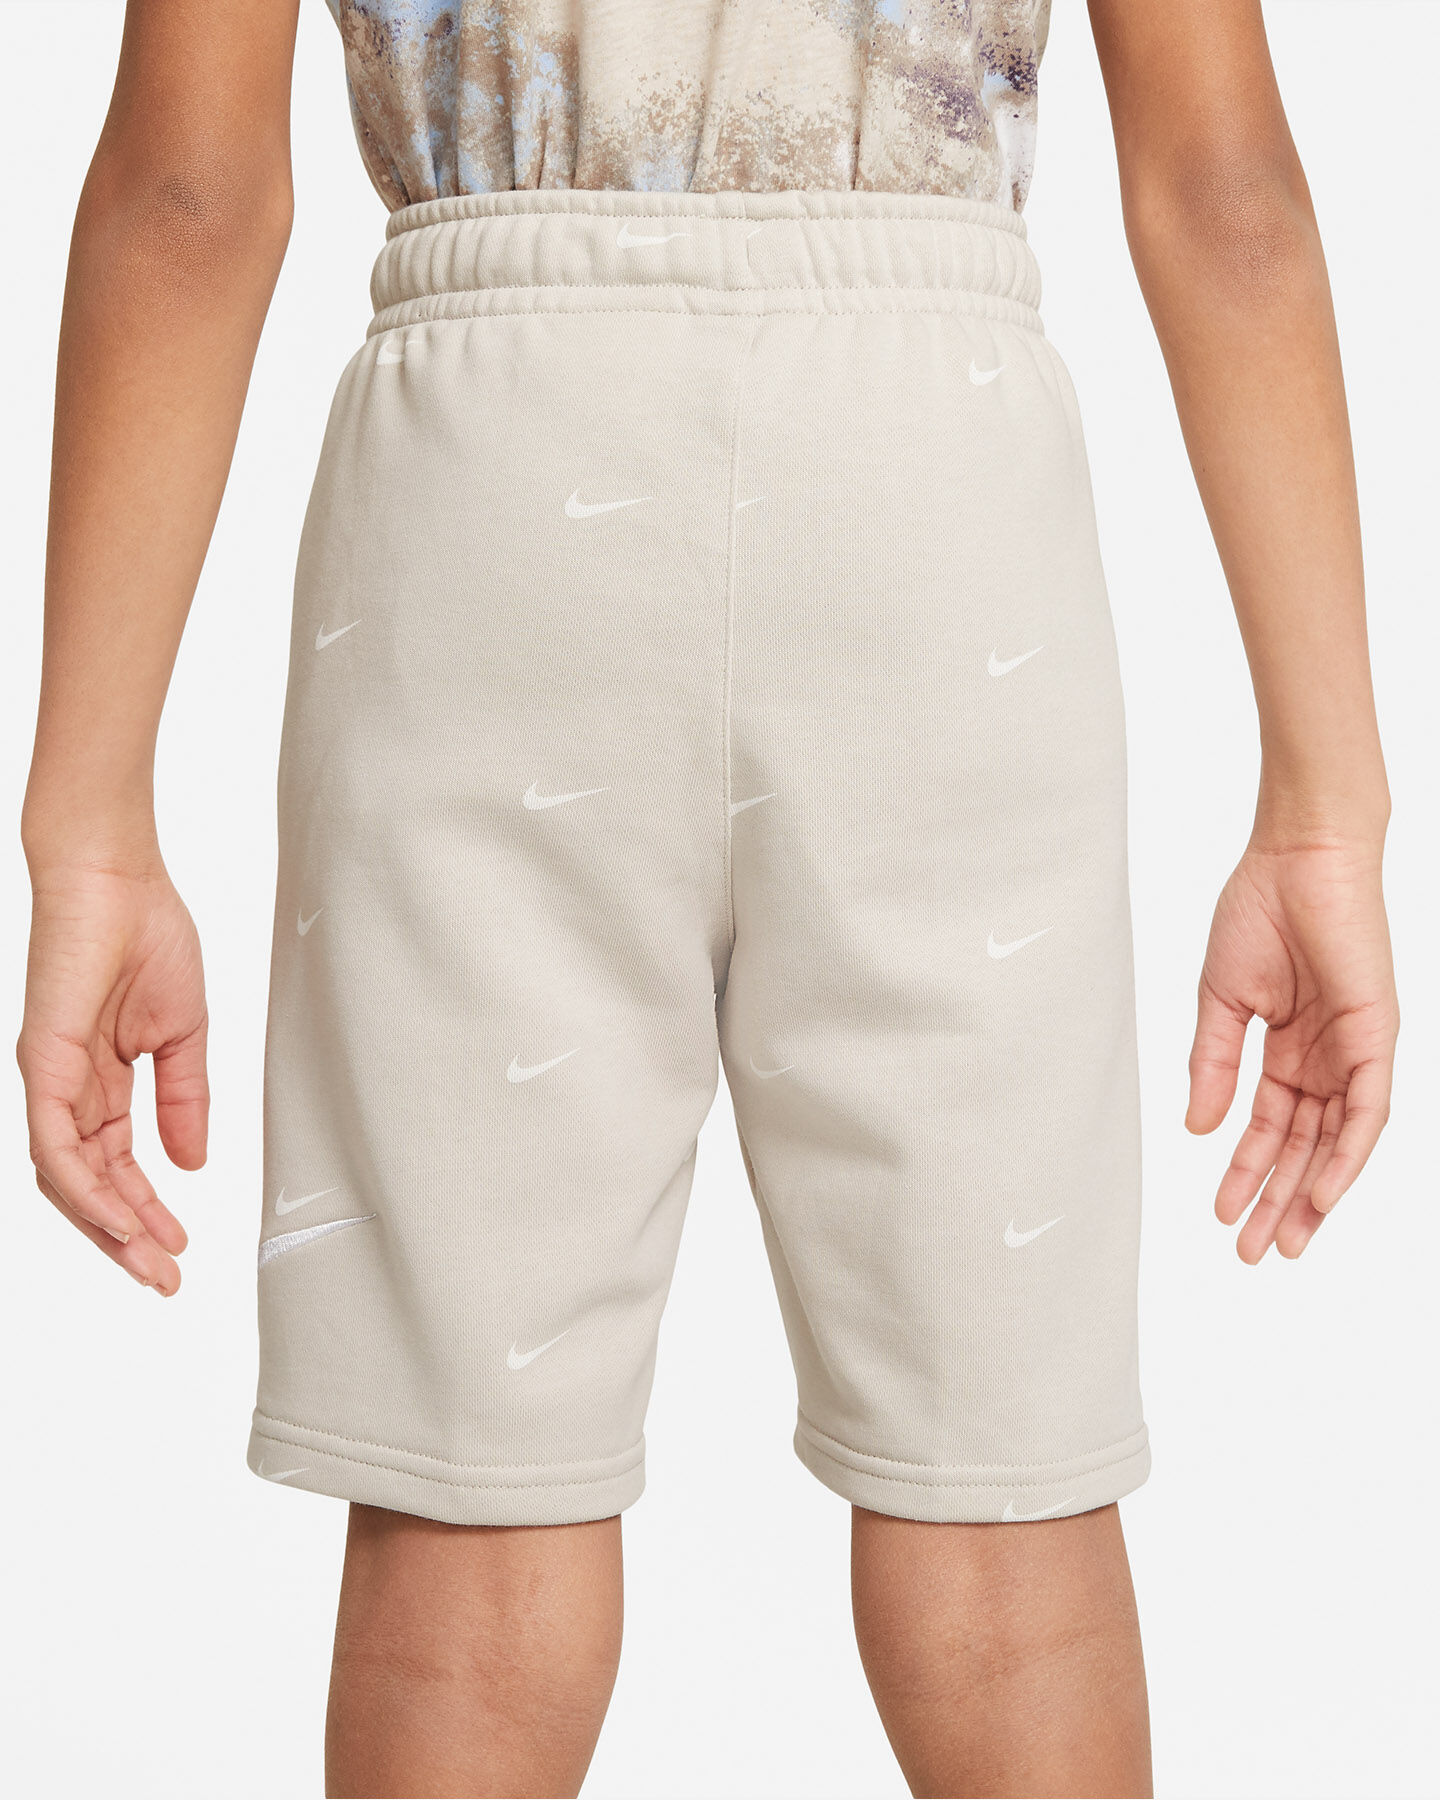  Pantaloncini NIKE SWOOSH JR S5299857|008|S scatto 1